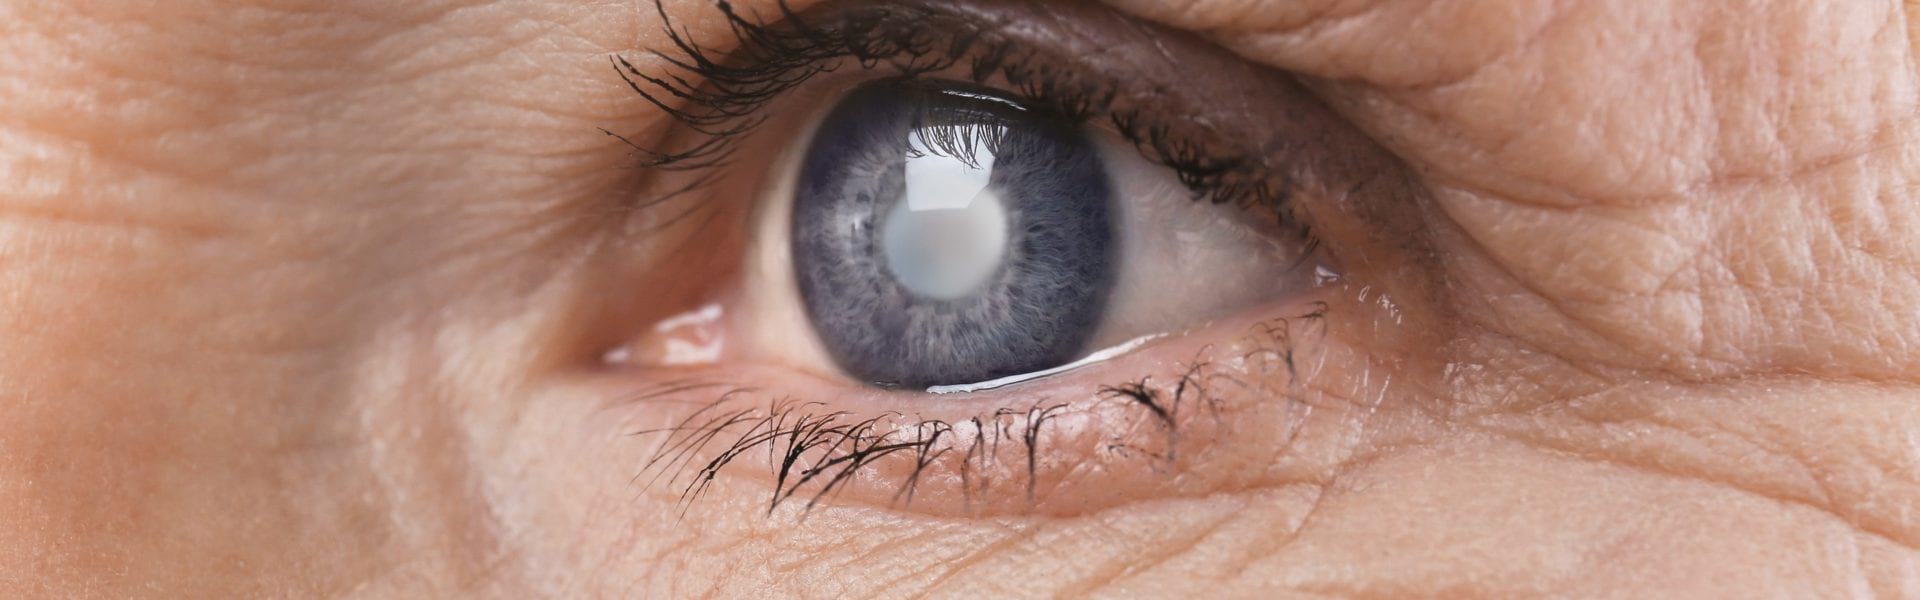 Αίτια, συμπτώματα και θεραπεία για τους όγκους του κόγχου στα μάτια